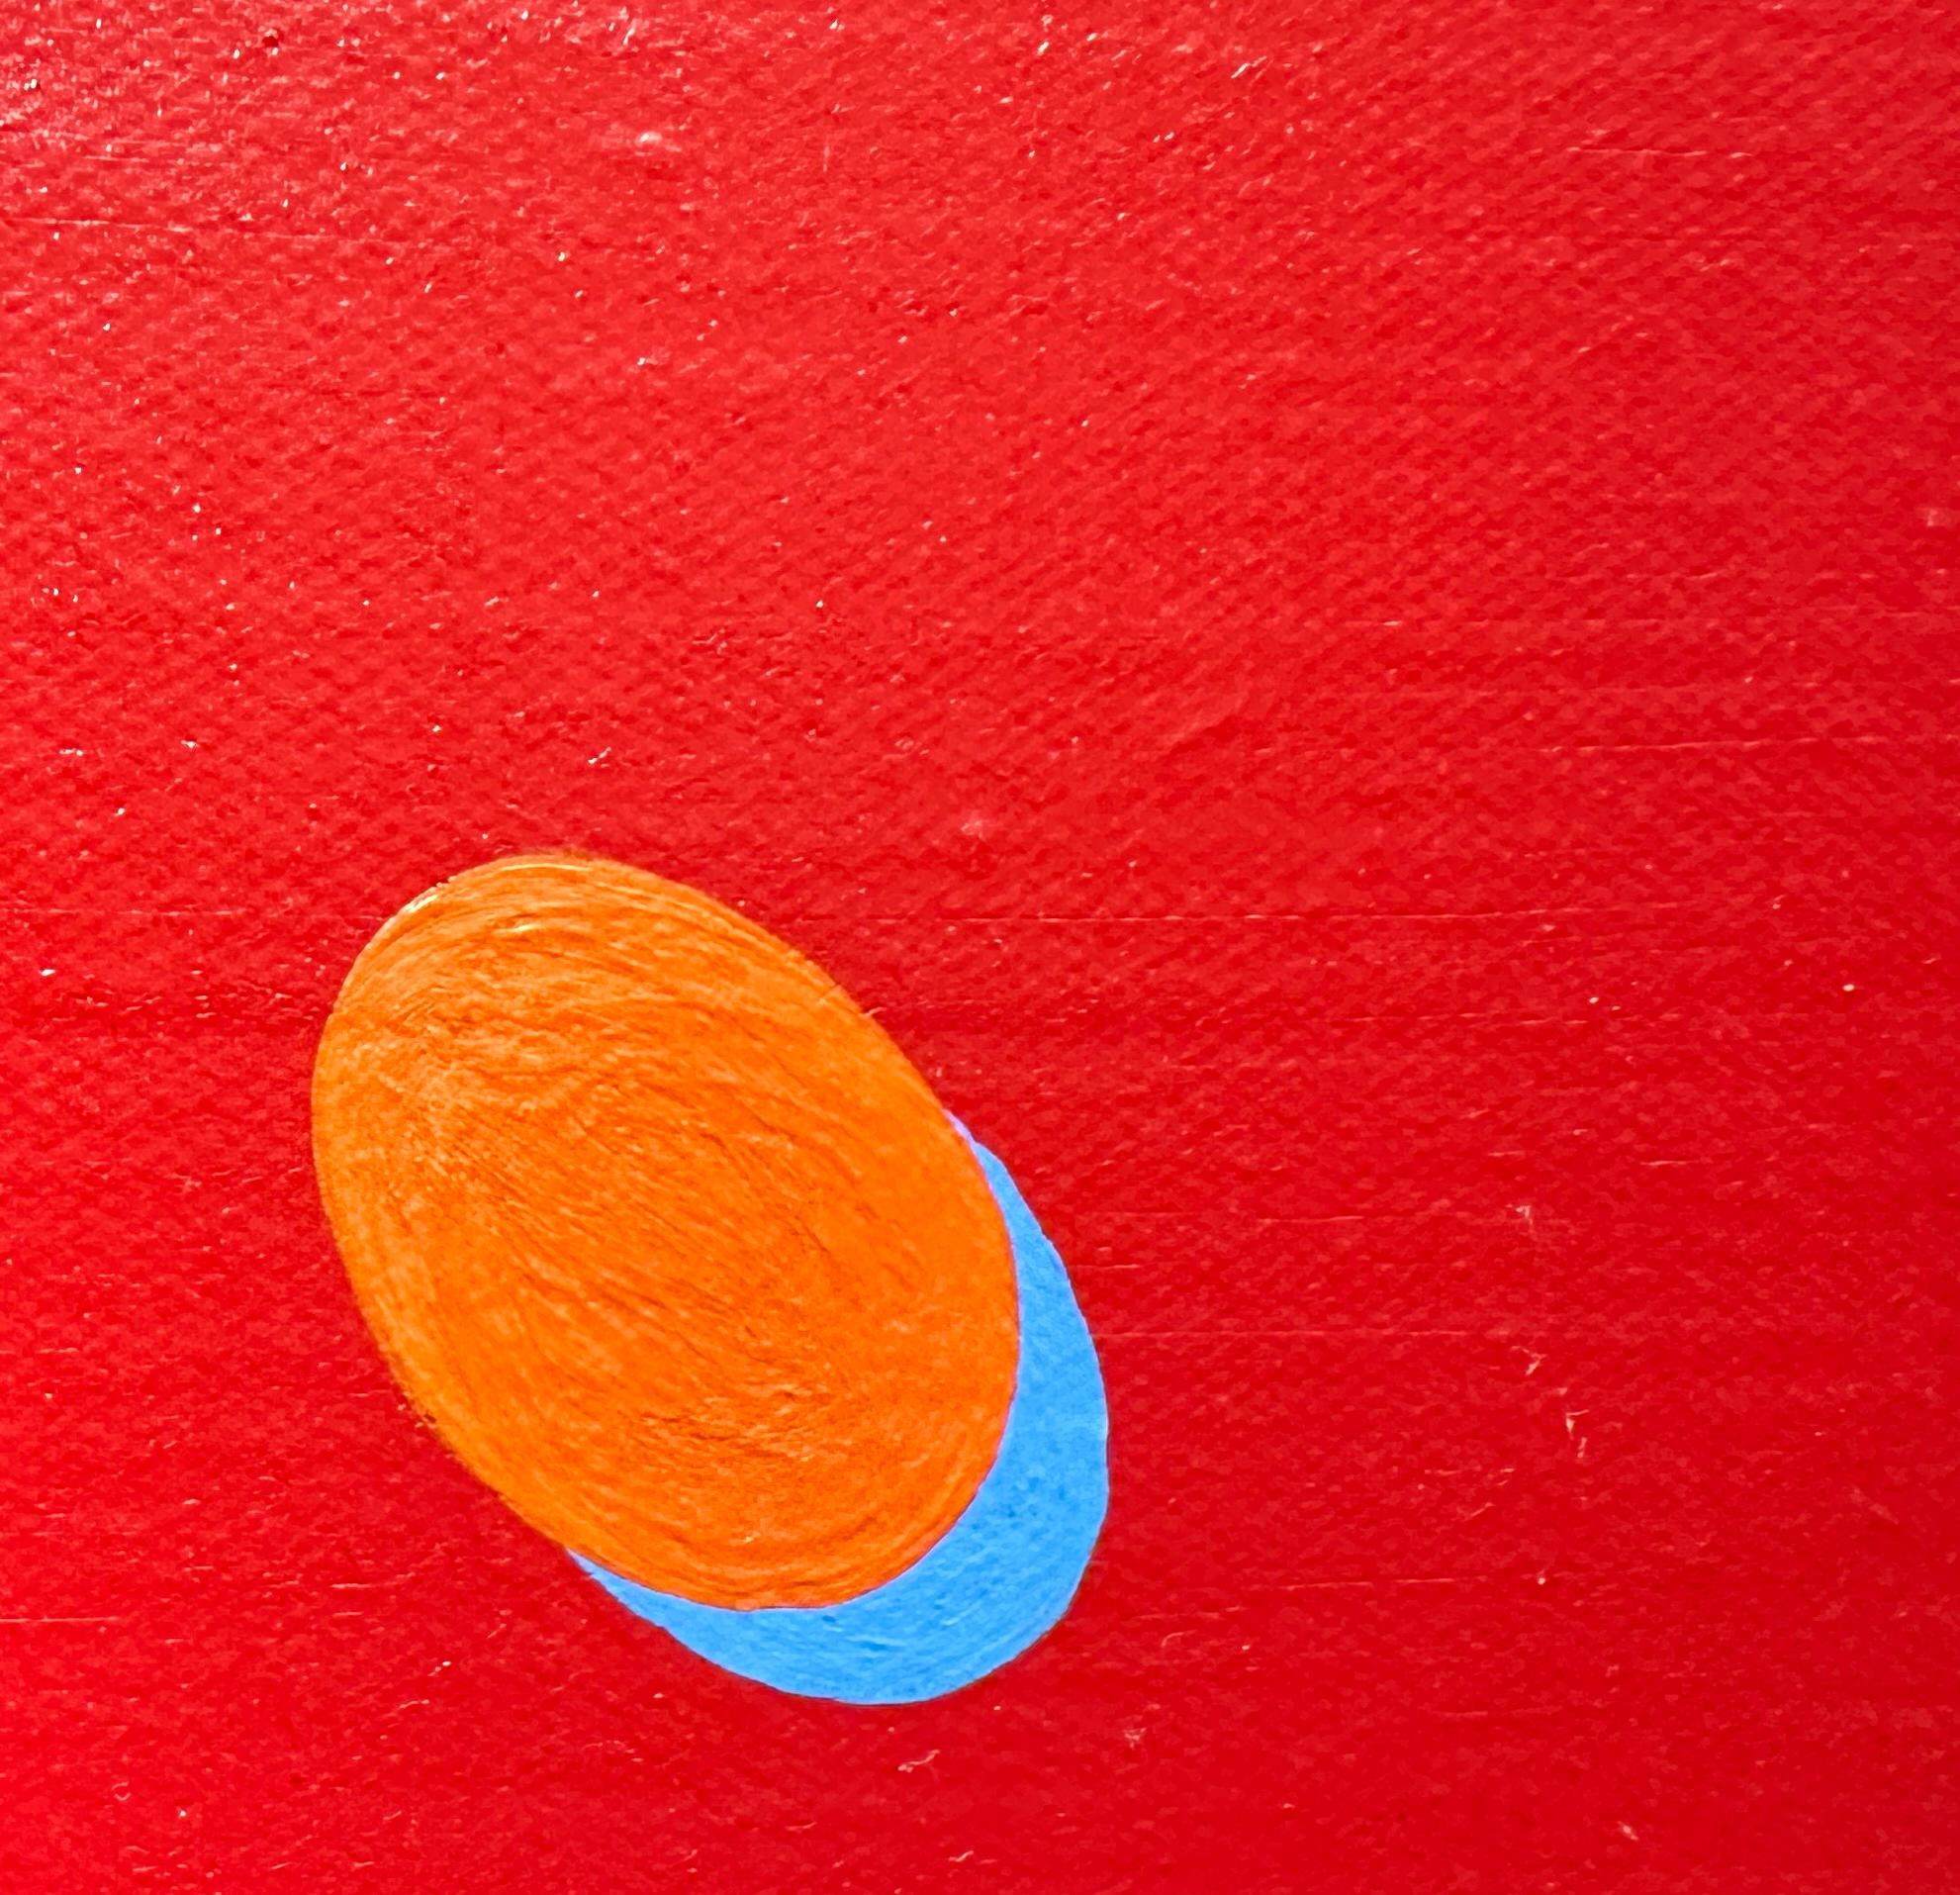 Der sattrote Hintergrund des Gemäldes von Naohiko Inukai scheint bei guter Beleuchtung zu leuchten,  mit den schwebenden Punkten, die diesem minimalistischen Werk einen Hauch von Laune verleihen. Das Gemälde misst 40